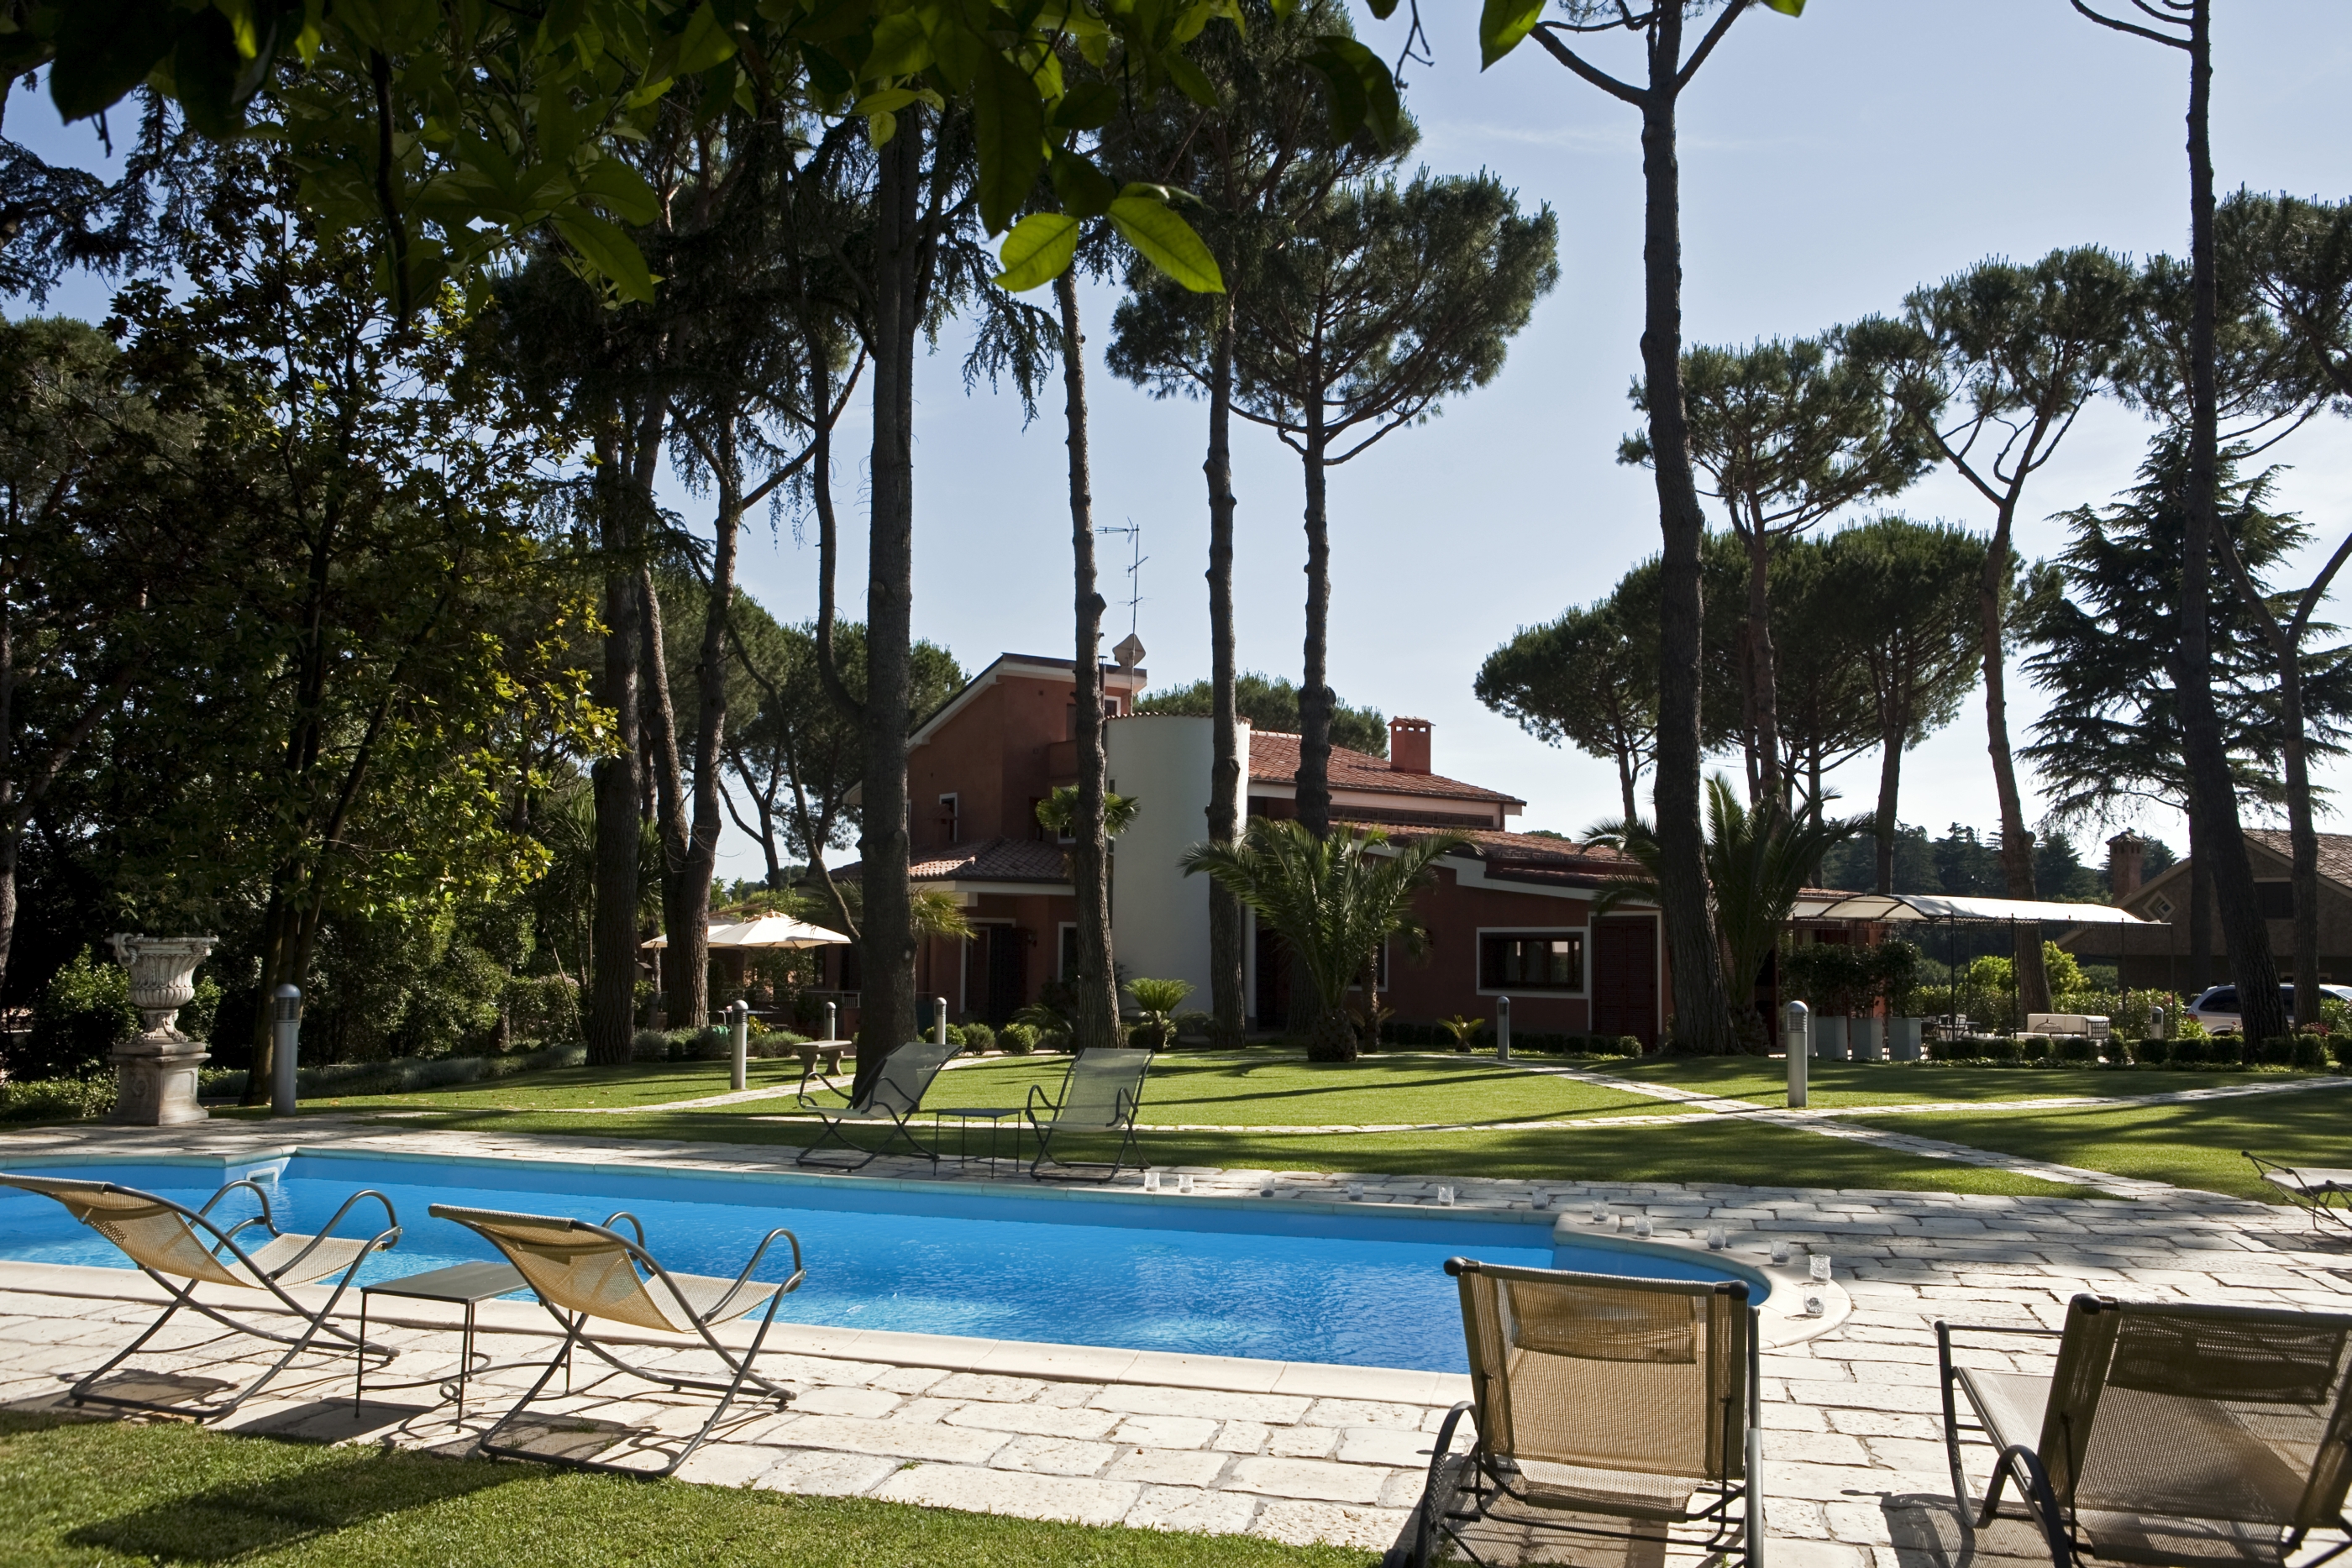 Swimming pool and gardens at Villa Nocetta, Rome Lazio